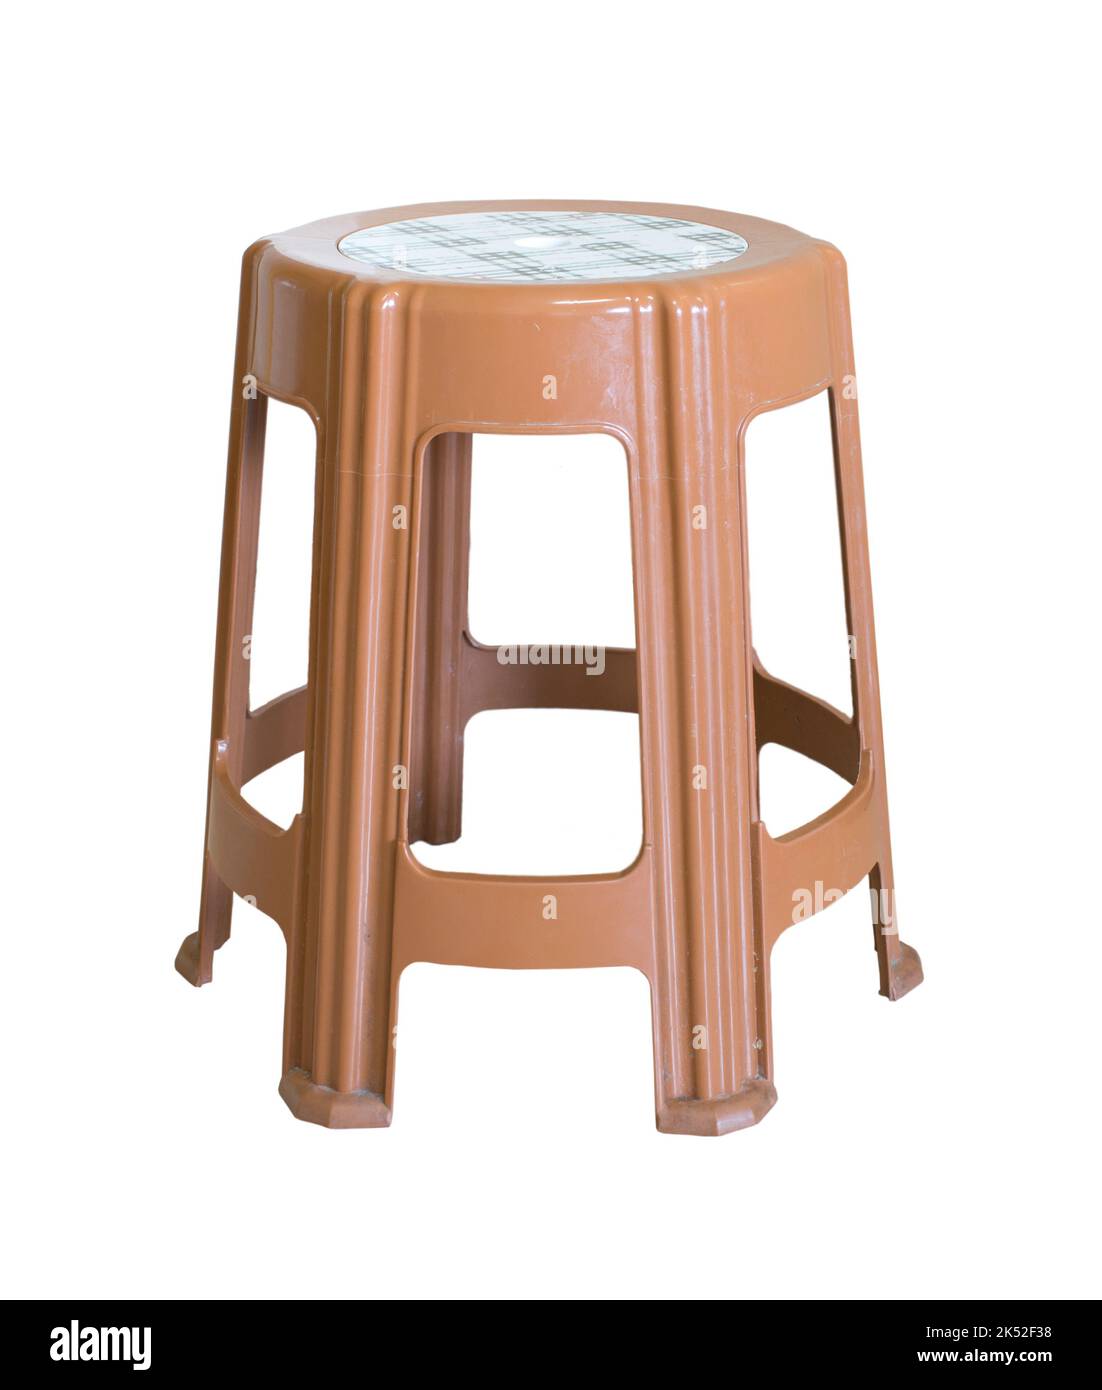 Bequemer Stuhl aus Kunststoff isoliert auf weißem Hintergrund. Schöner Stuhl auf weißem Hintergrund Stockfoto